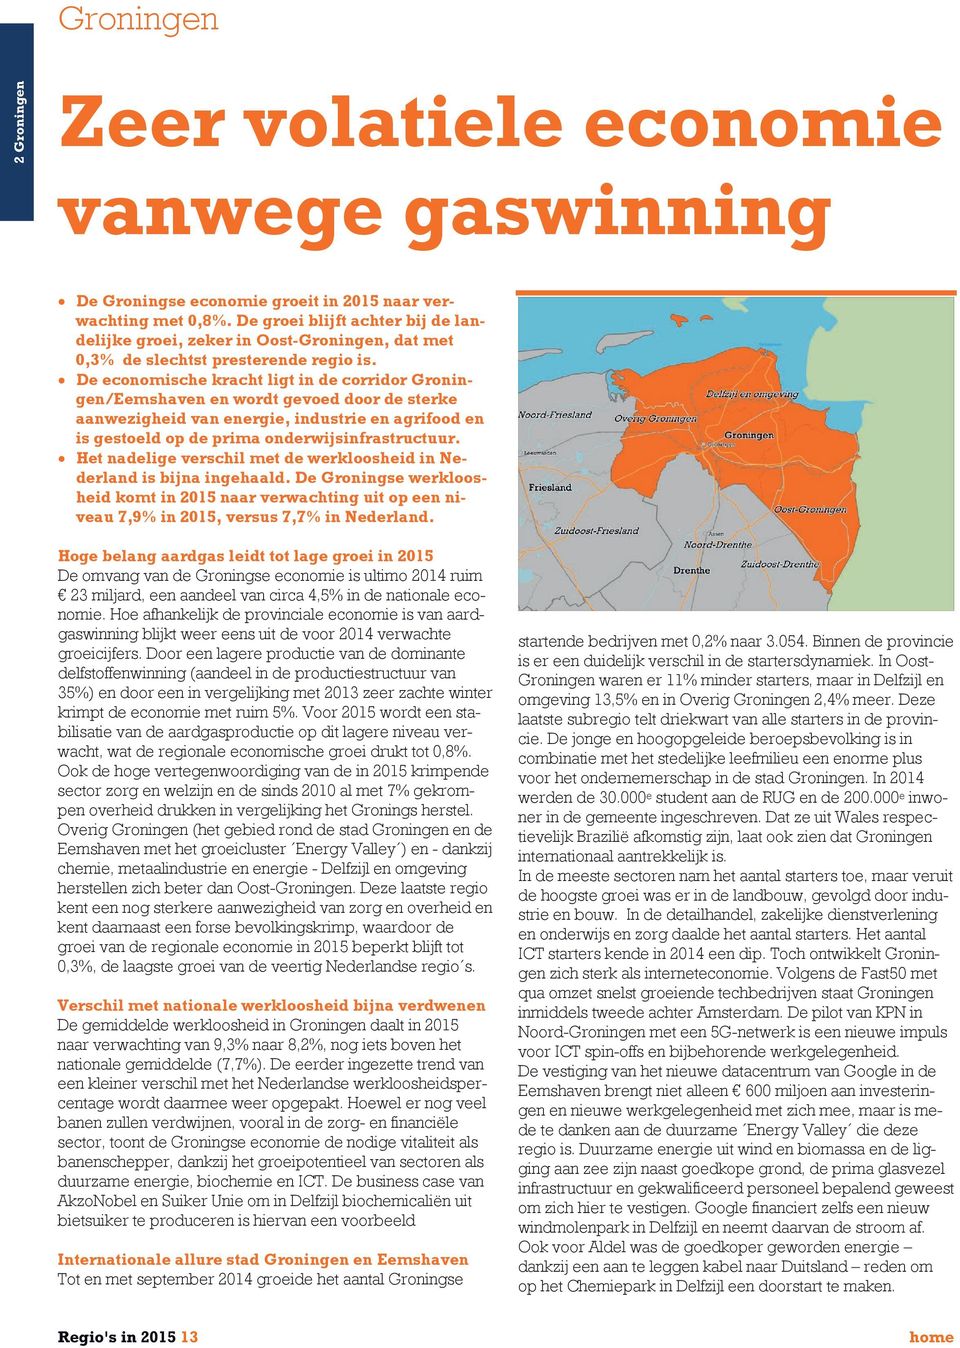 De economische kracht ligt in de corridor Groningen/Eemshaven en wordt gevoed door de sterke aanwezigheid van energie, industrie en agrifood en is gestoeld op de prima onderwijsinfrastructuur.